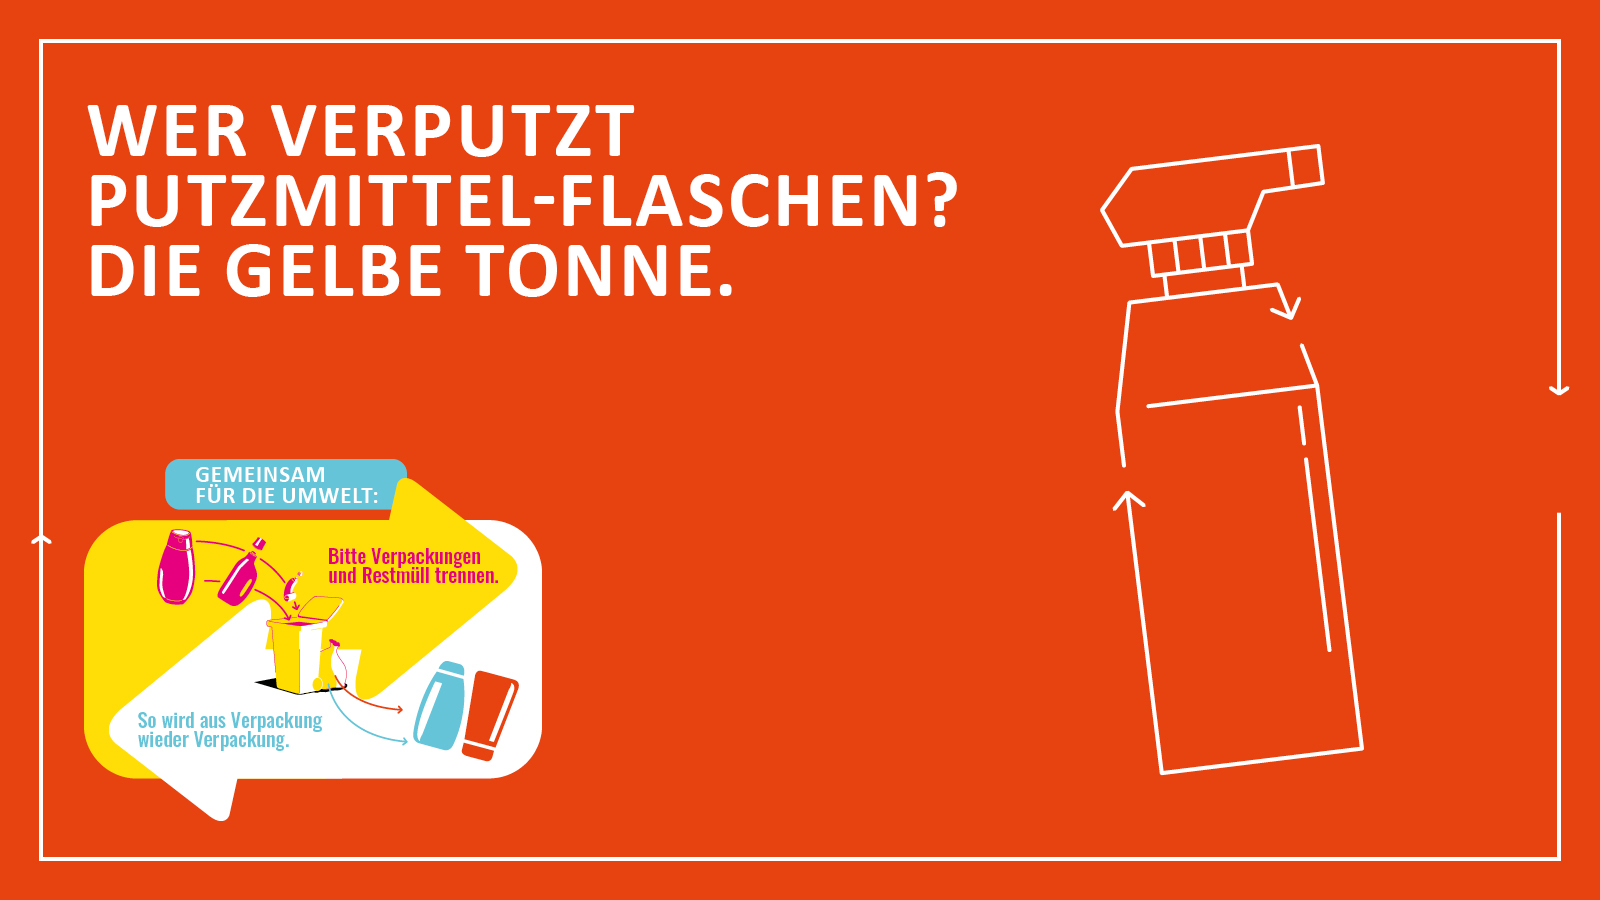 Grafikmotiv mit Slogan  für richtige Mülltrennung und stilisierte Putzmittel-Sprühflasche